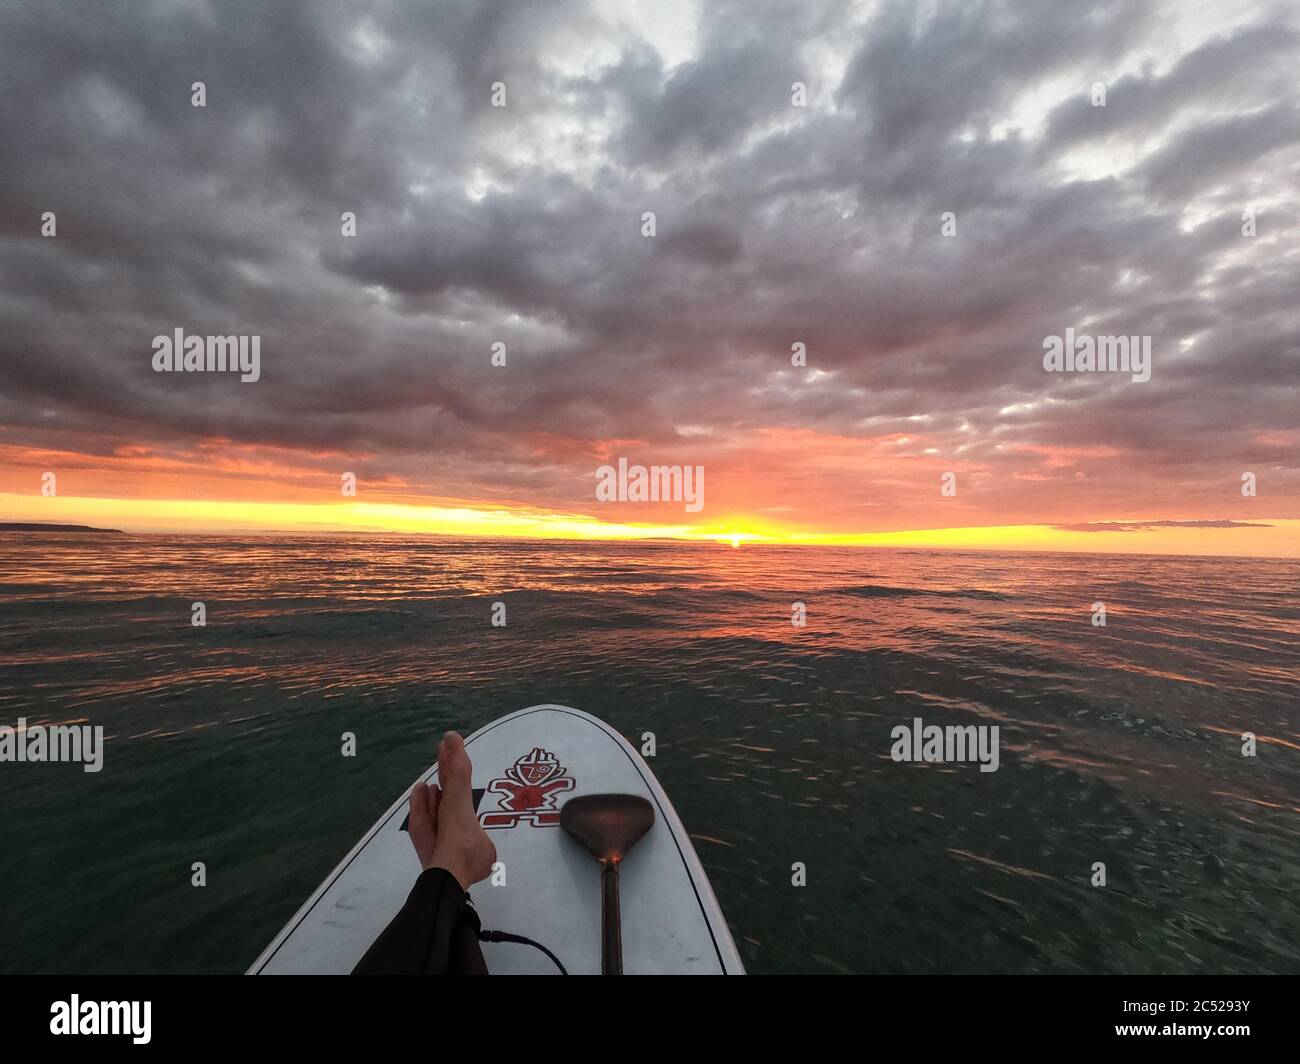 Fuga del virus. Guardando un incredibile tramonto su una tavola Stand Up paddle durante il blocco del coronavirus Foto Stock